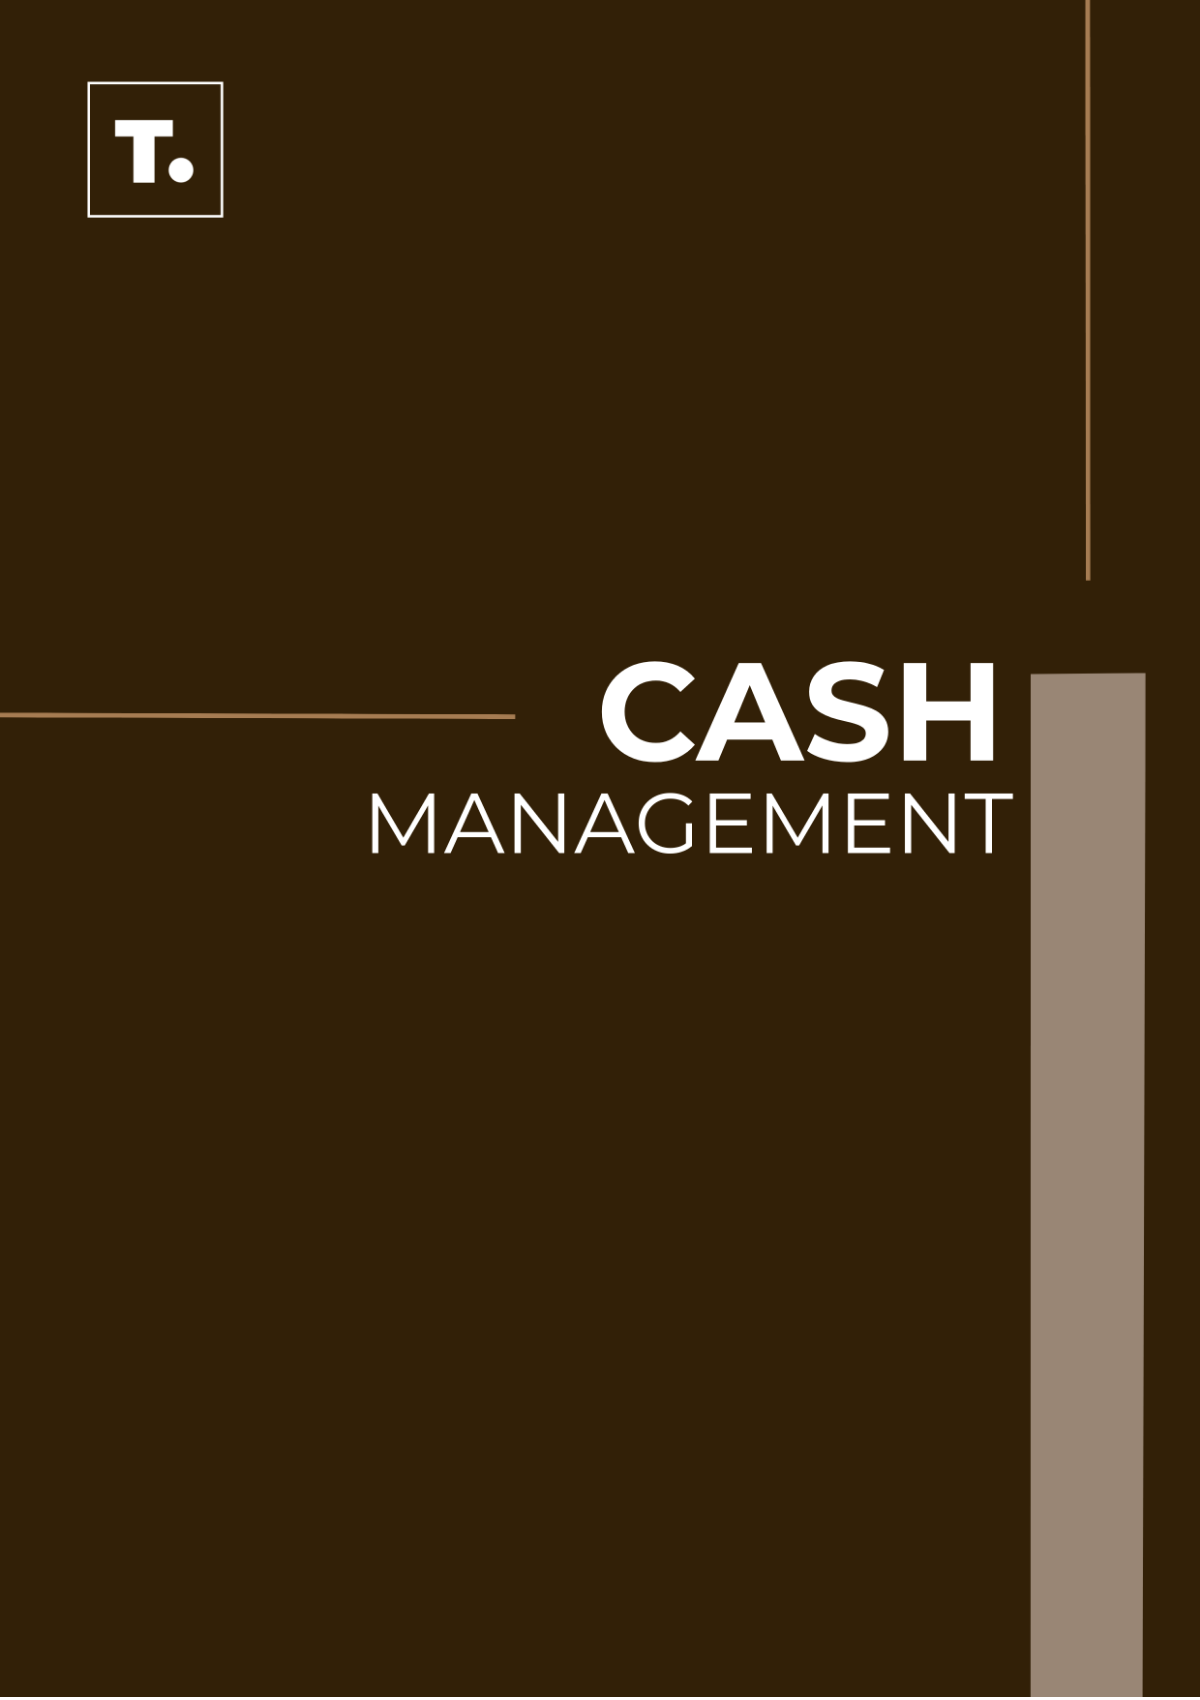 Free Cash Management SOP Template